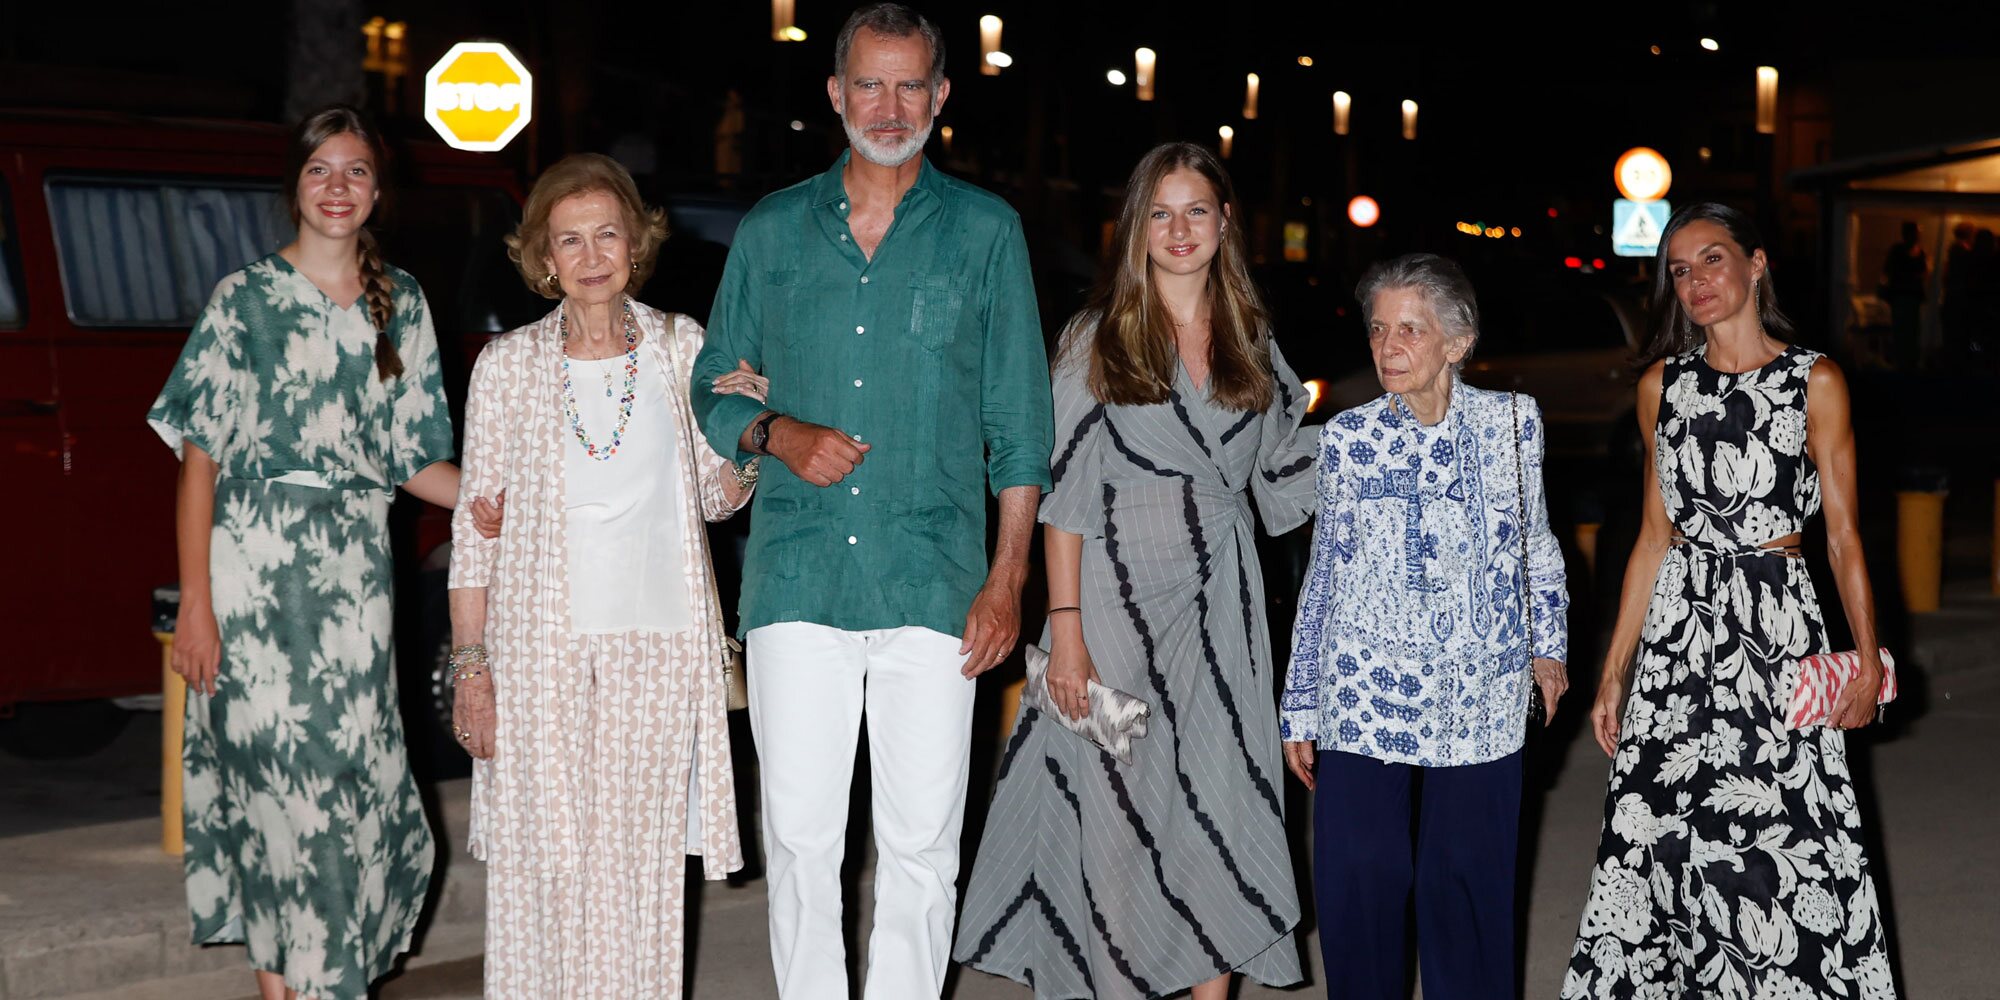 La felicidad de Felipe y Letizia, Leonor y Sofía, la Reina Sofía e Irene de Grecia en su cena familiar en Mallorca